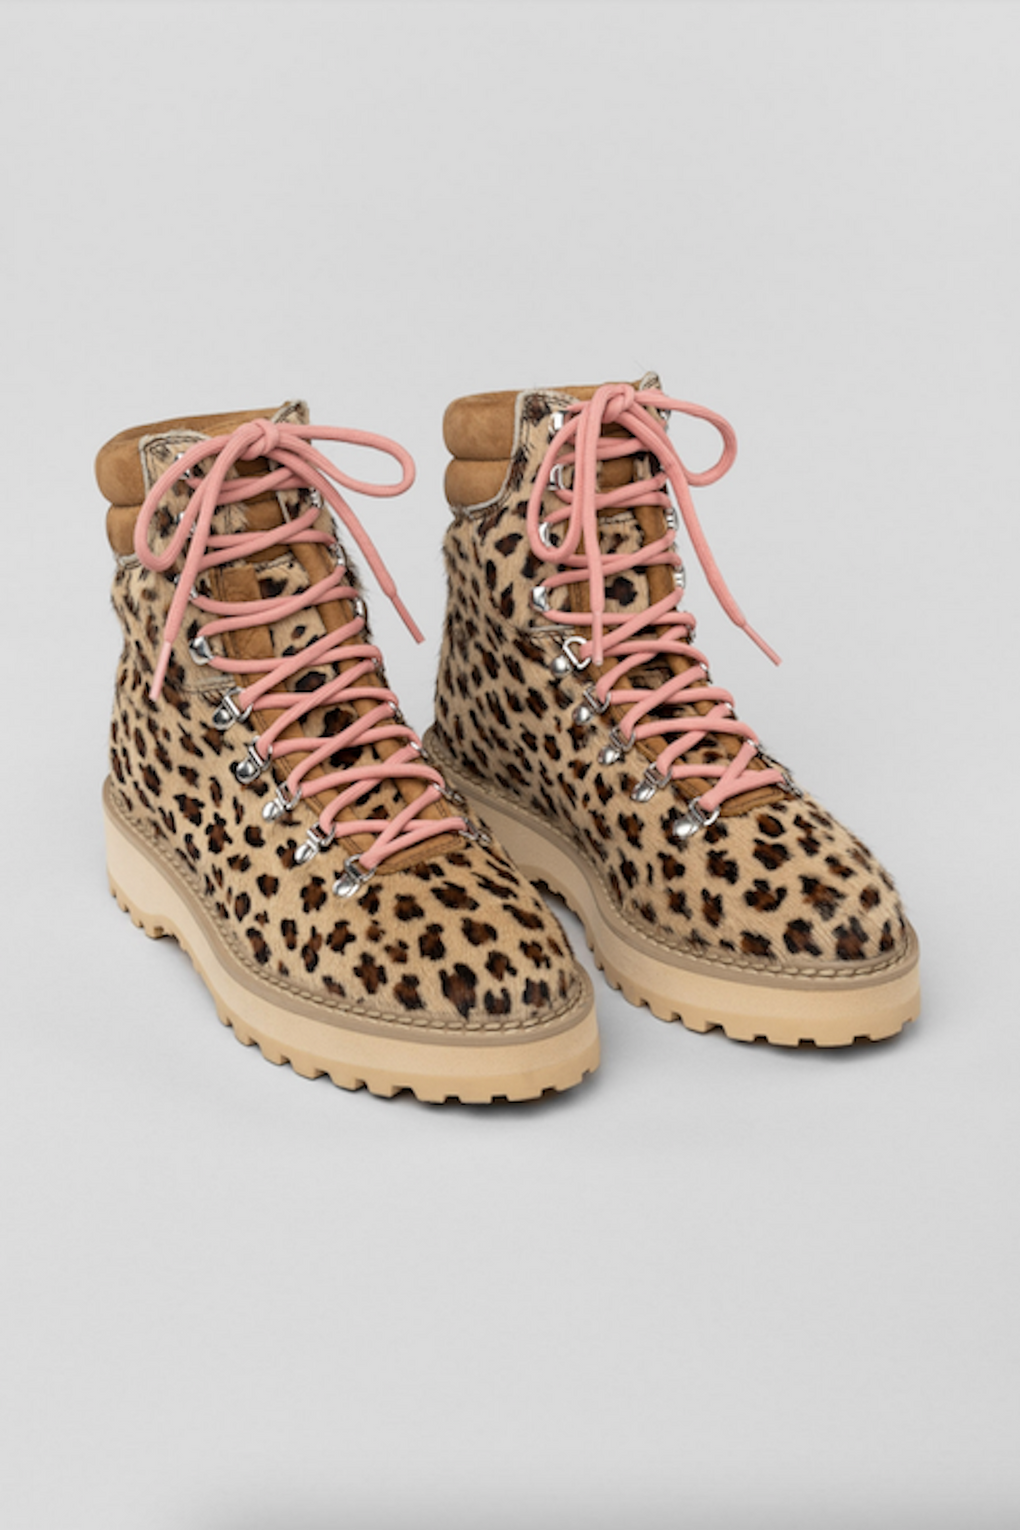 Diemme Monfumo Boots-leopard boots-Demme leopard boots-Demme winter boots-Idun-St. Paul